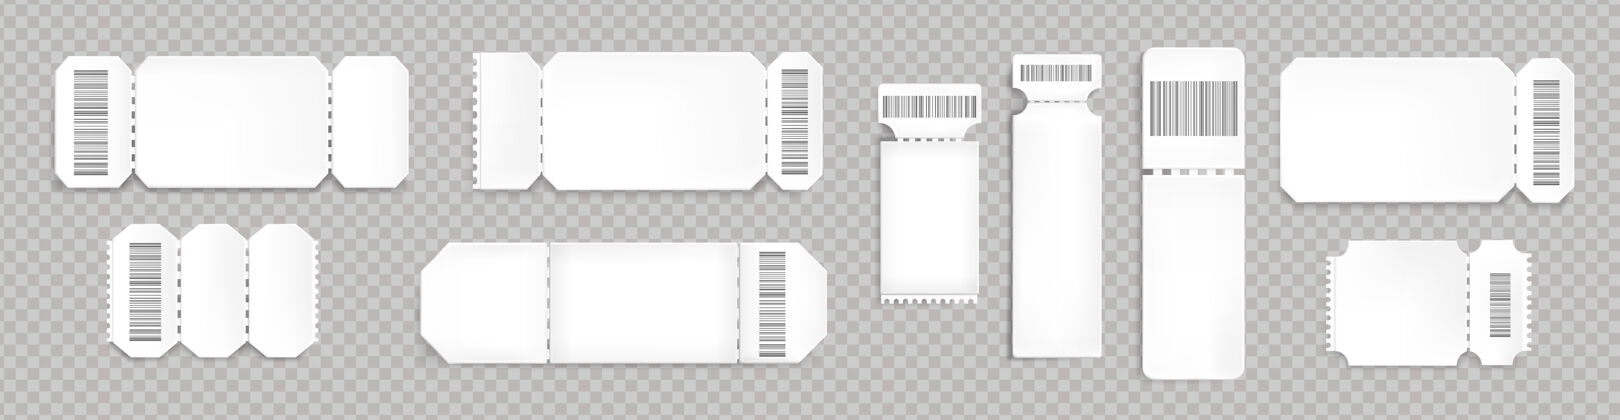 展览带条形码和虚线的空白彩票模型音乐会 电影院和交通工具登机的空白模板透明背景上隔离的白色彩票 逼真的3d矢量集线路座位入口